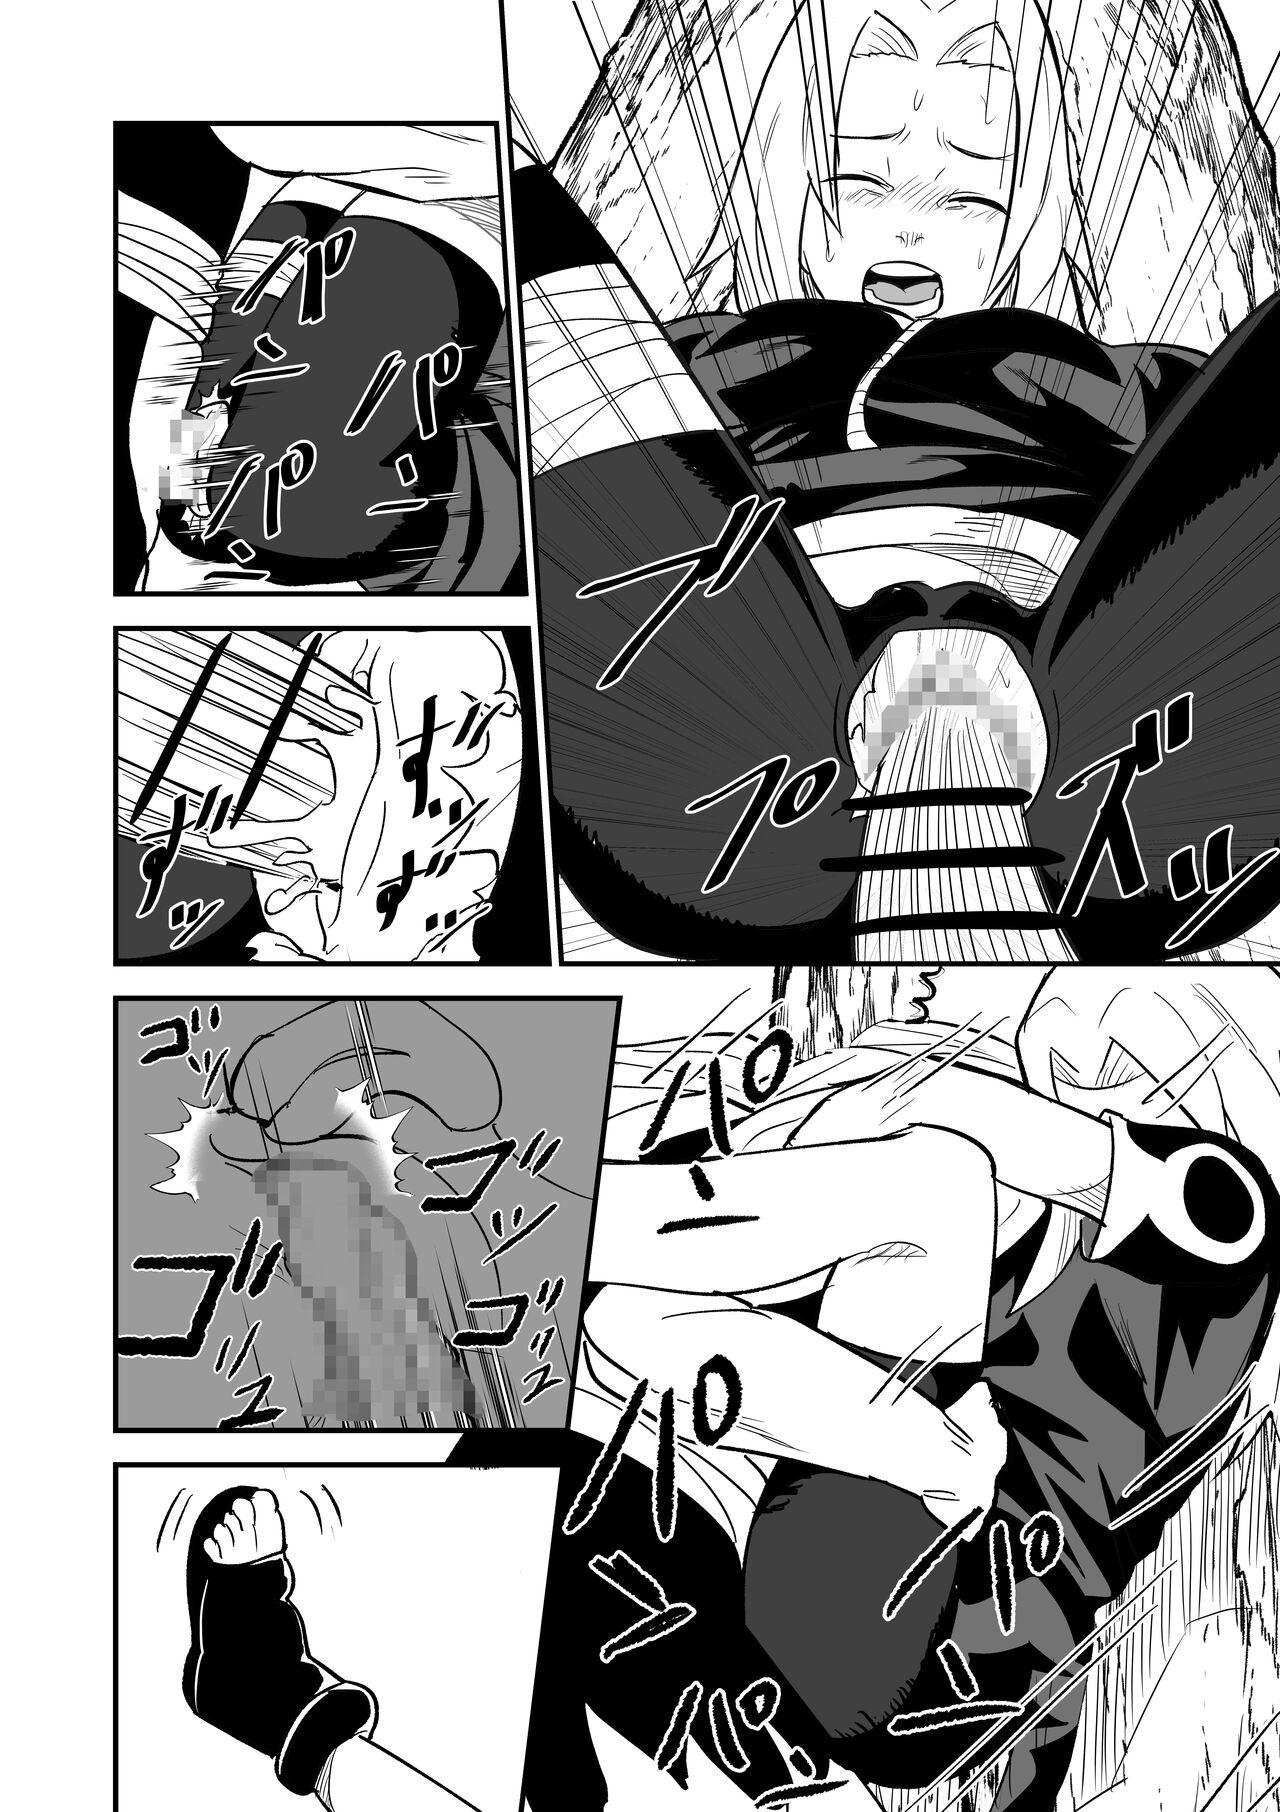 Masterbate 無限月読シリーズ サクラ - Naruto Licking - Page 6